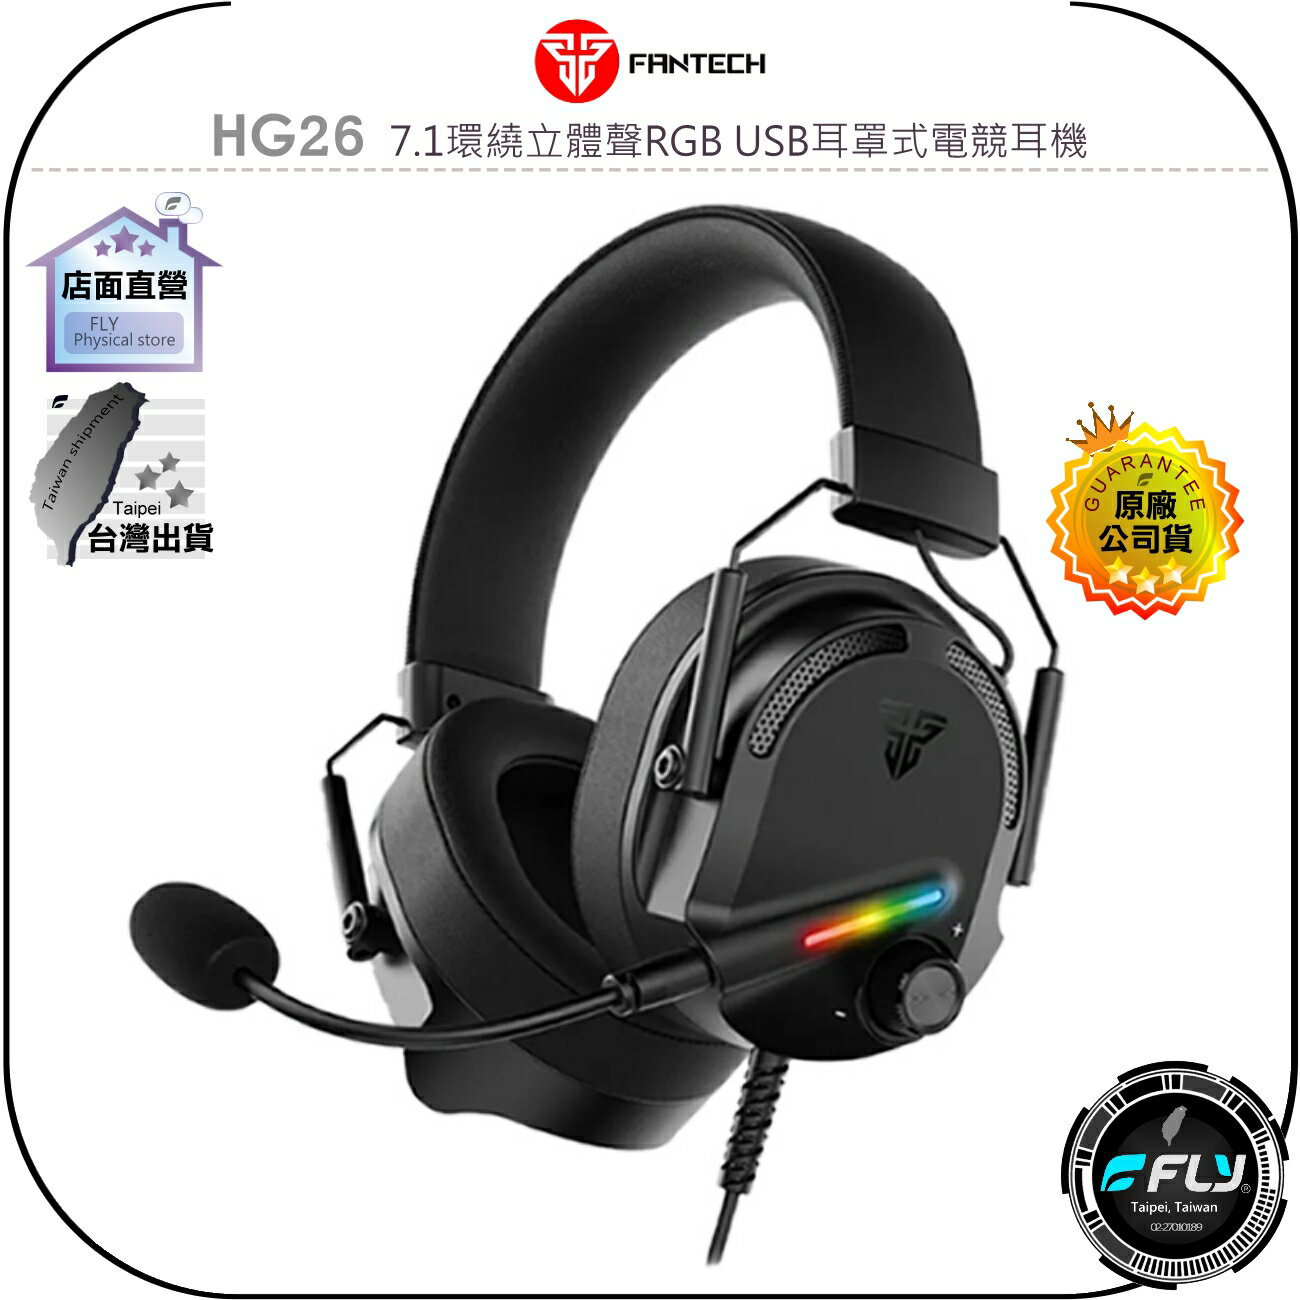 【飛翔商城】FANTECH HG26 7.1環繞立體聲RGB USB耳罩式電競耳機◉公司貨◉50mm大單體◉頭戴式電腦用